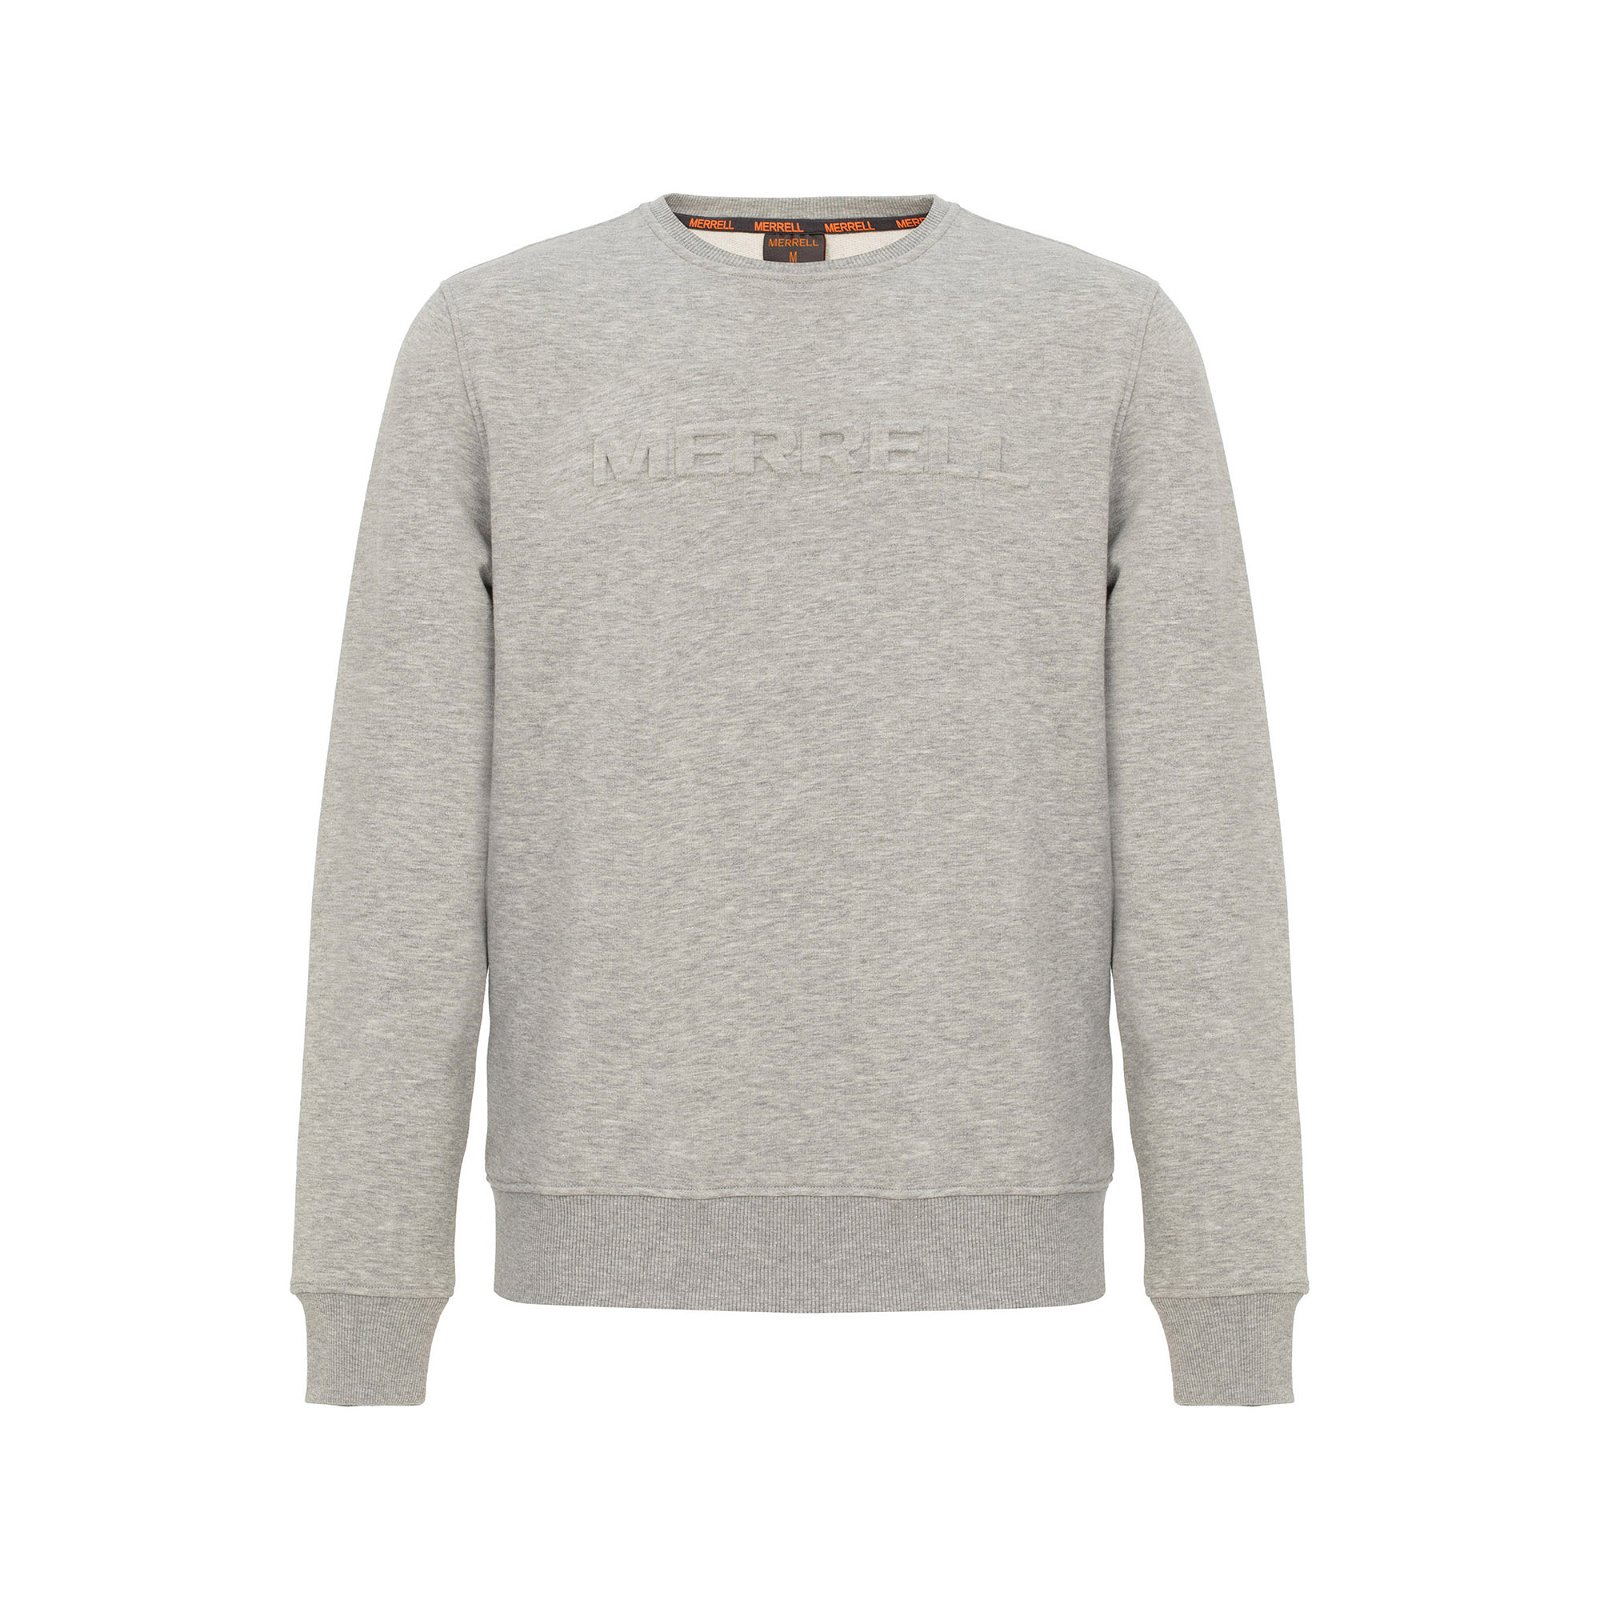 Merrell Simple Erkek Sweatshirt - Gri - 1